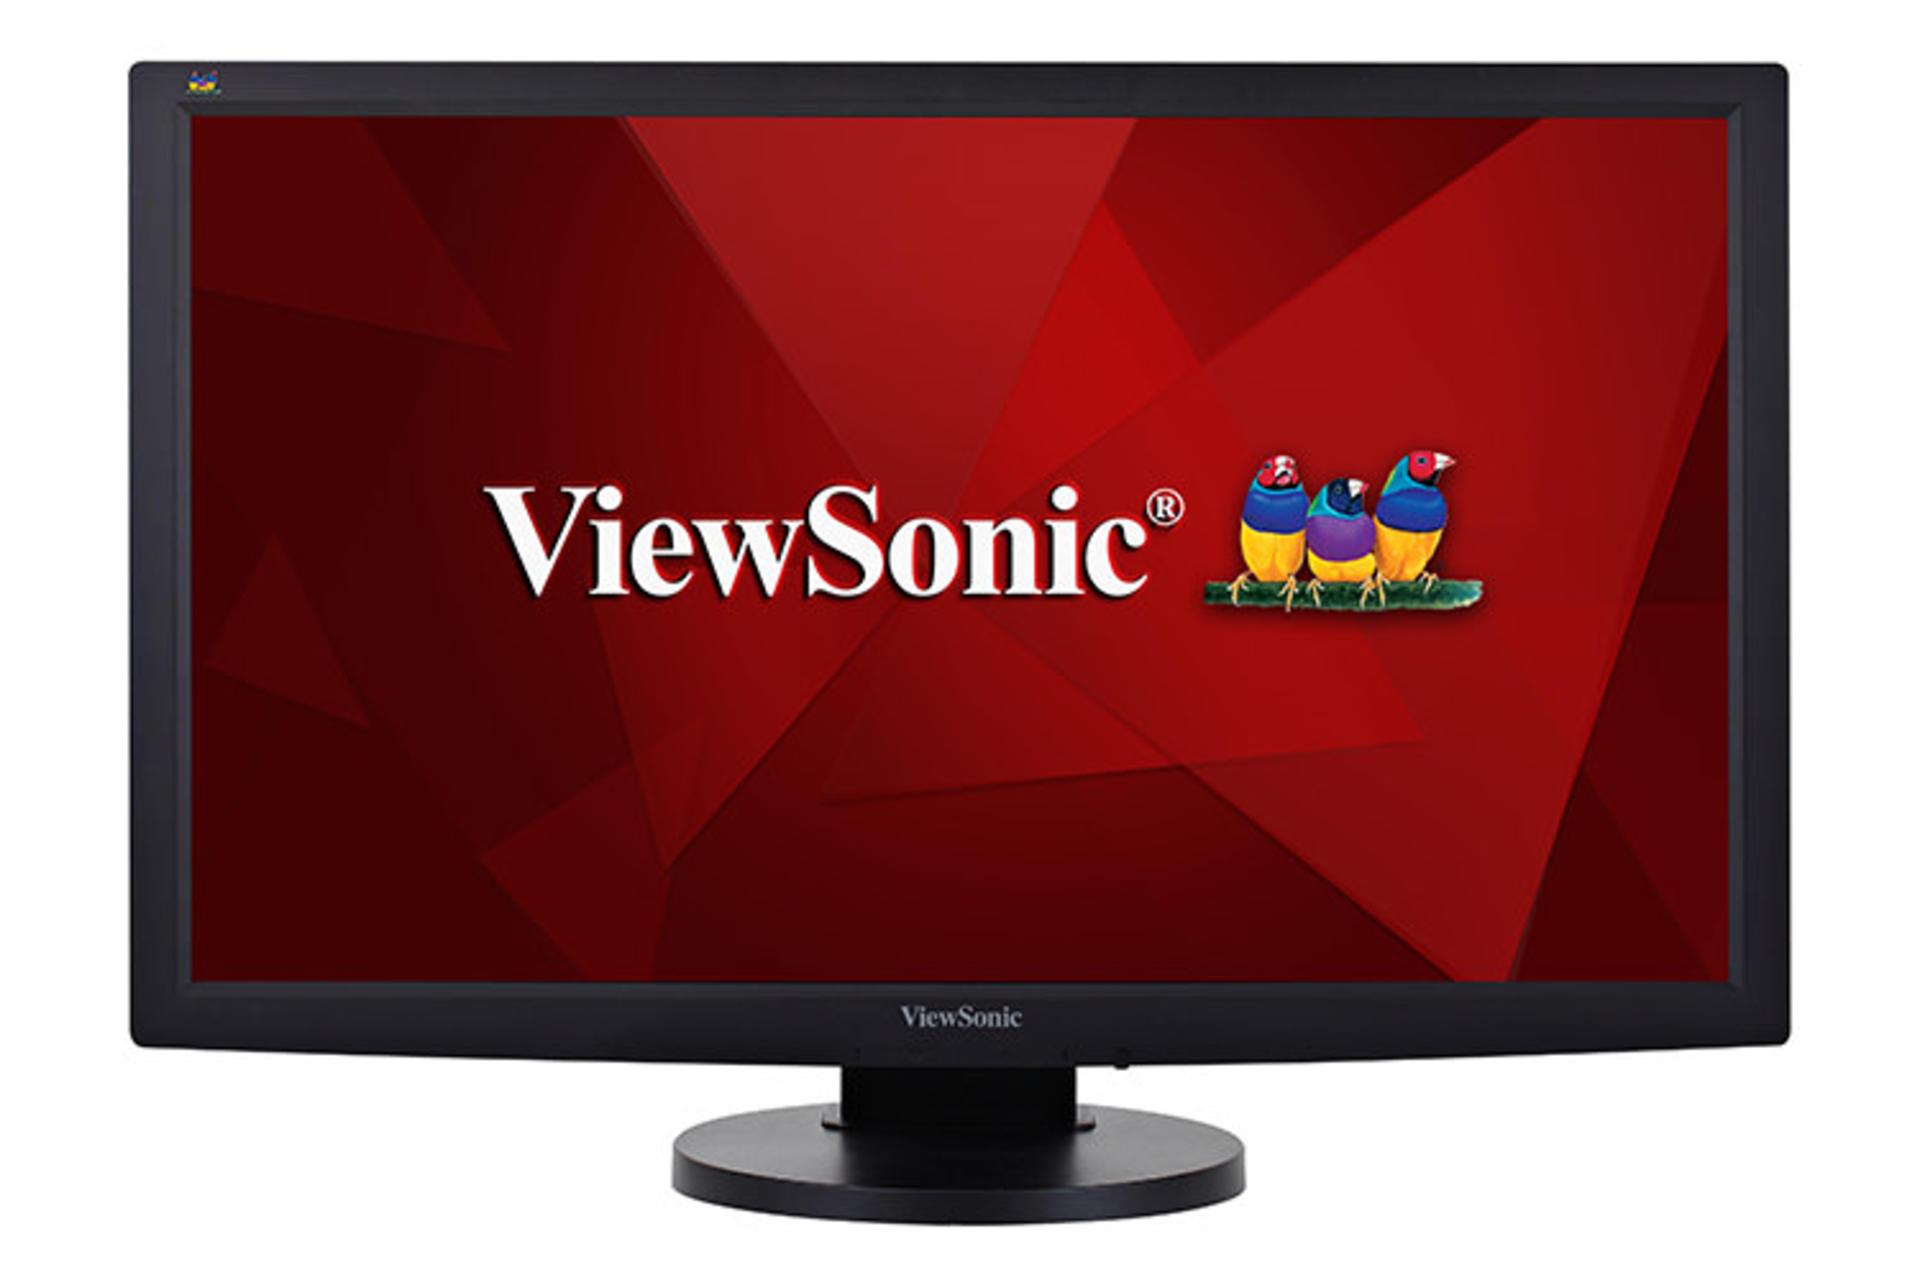 ViewSonic VG2233-LED 